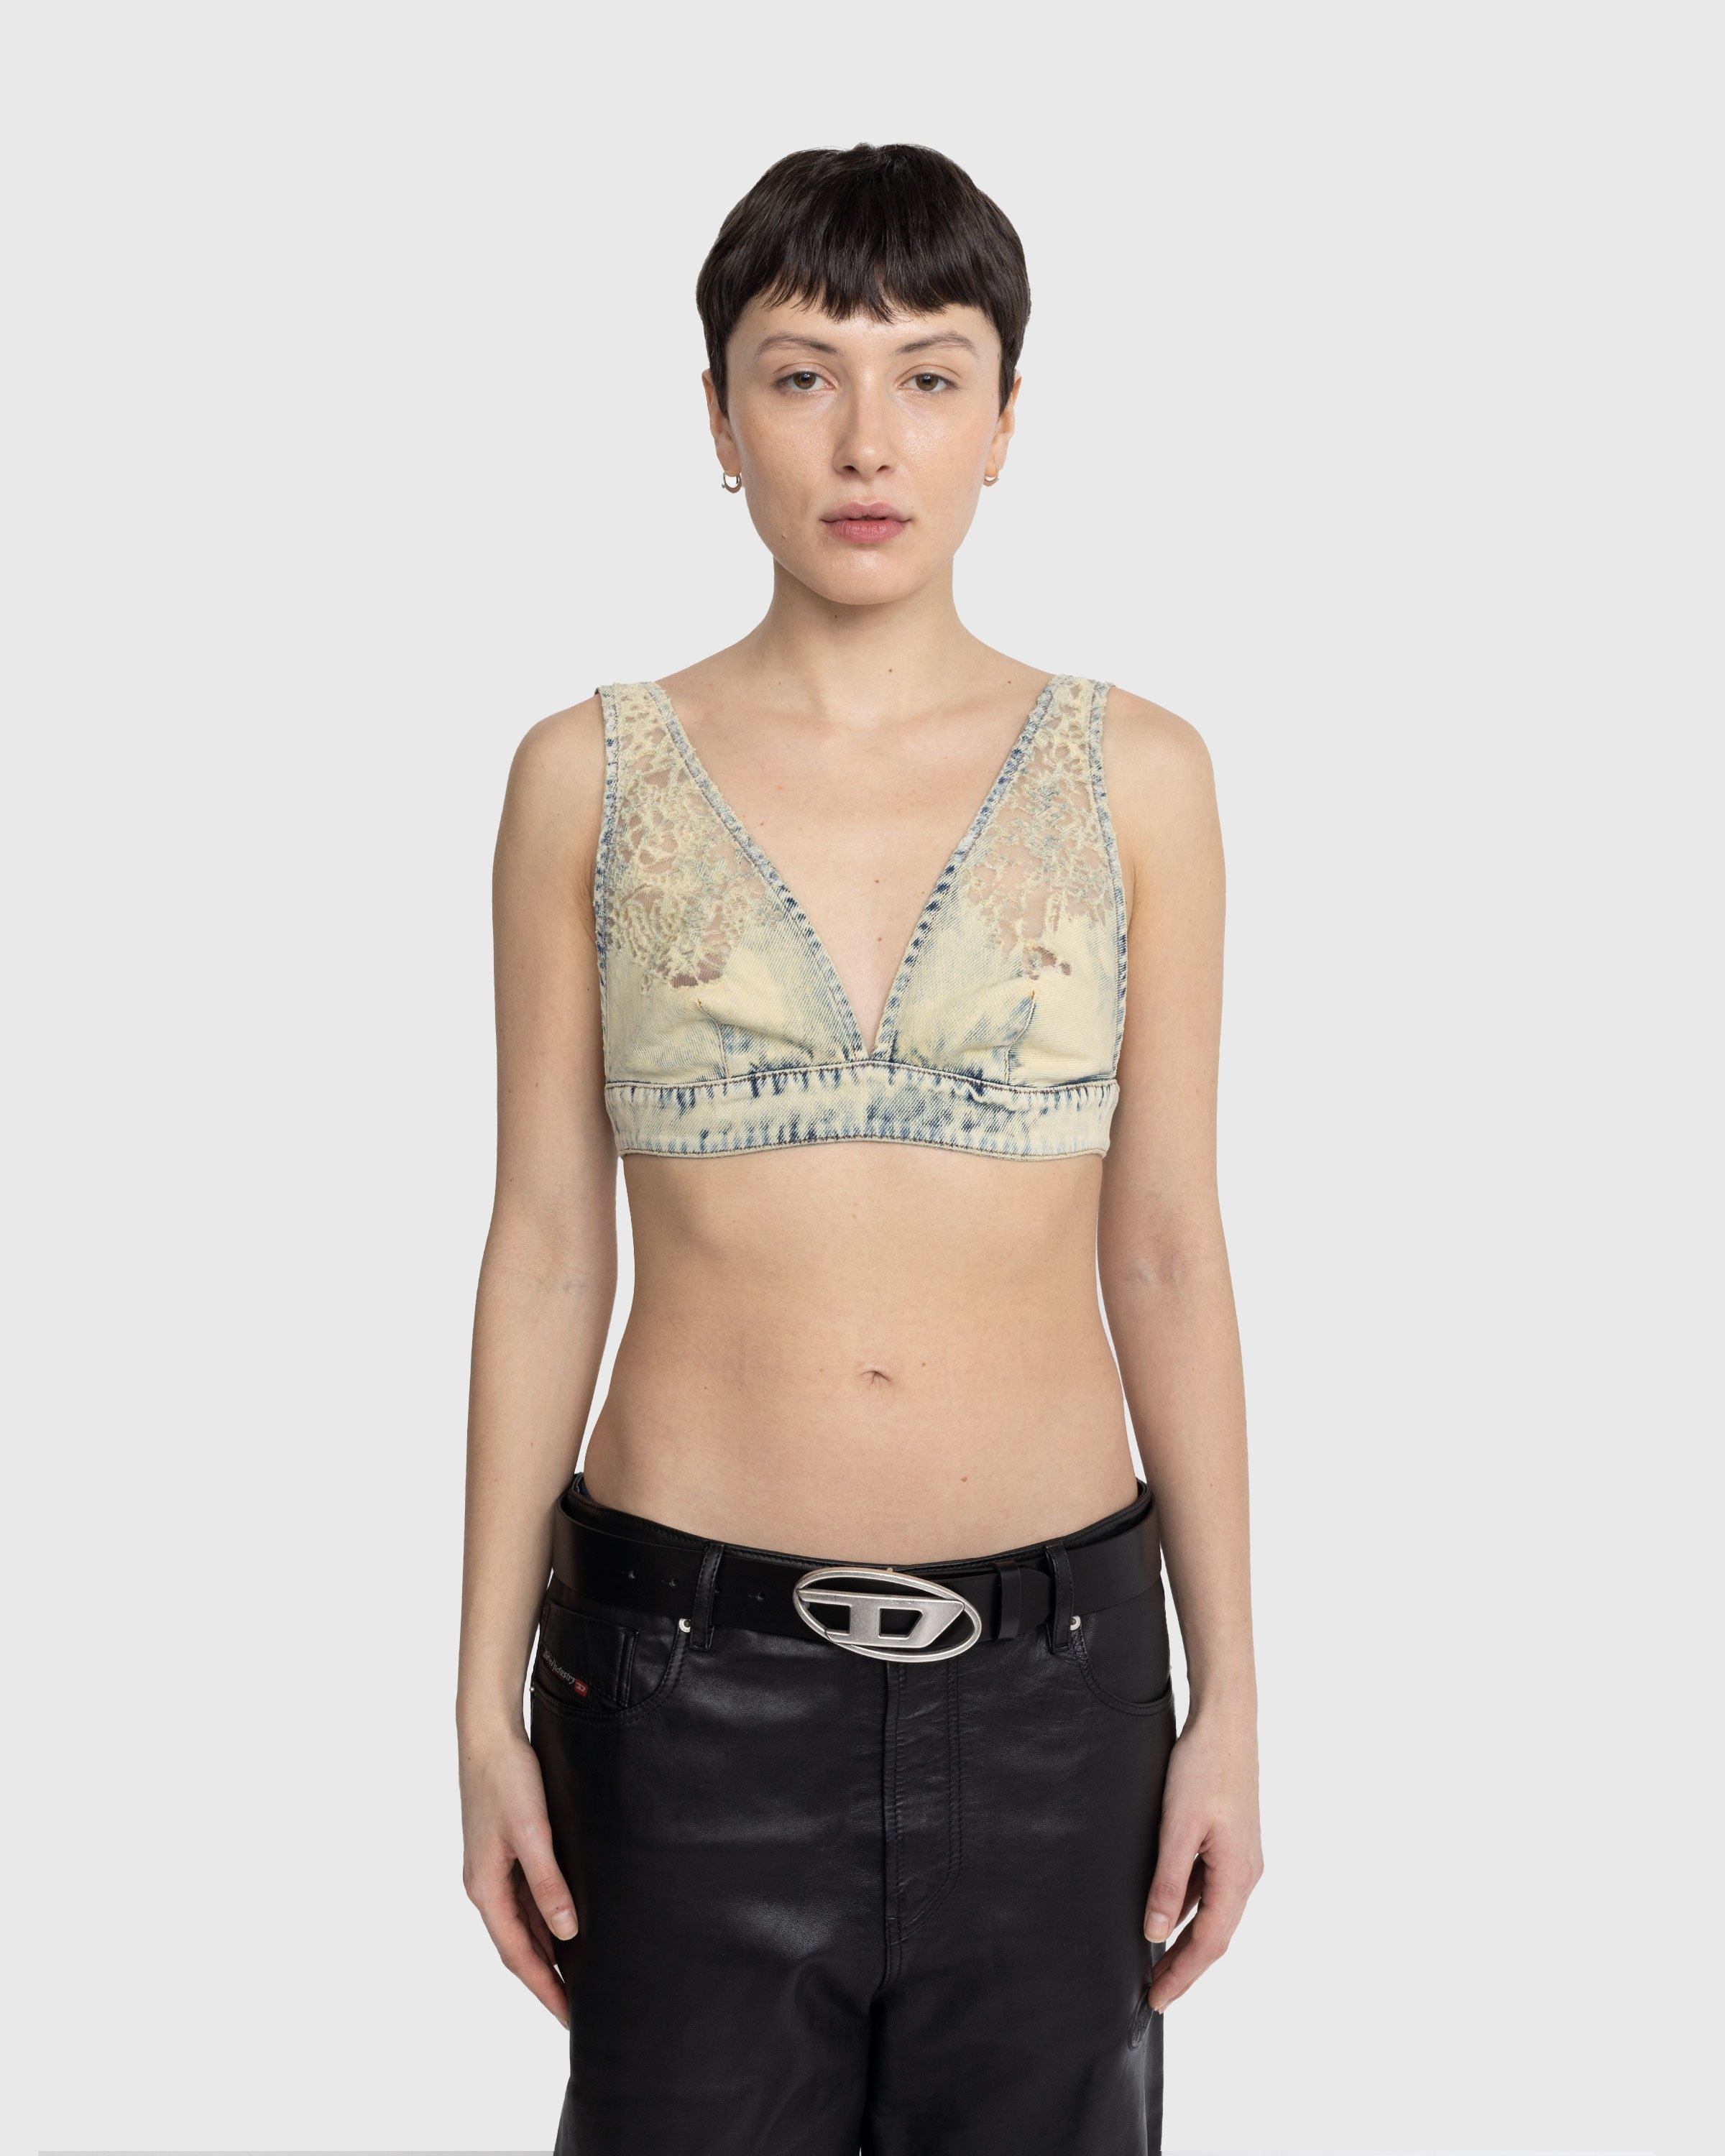 Calvin Klein Women's Pom Lace Unlined Triangle Bralette, Black, M